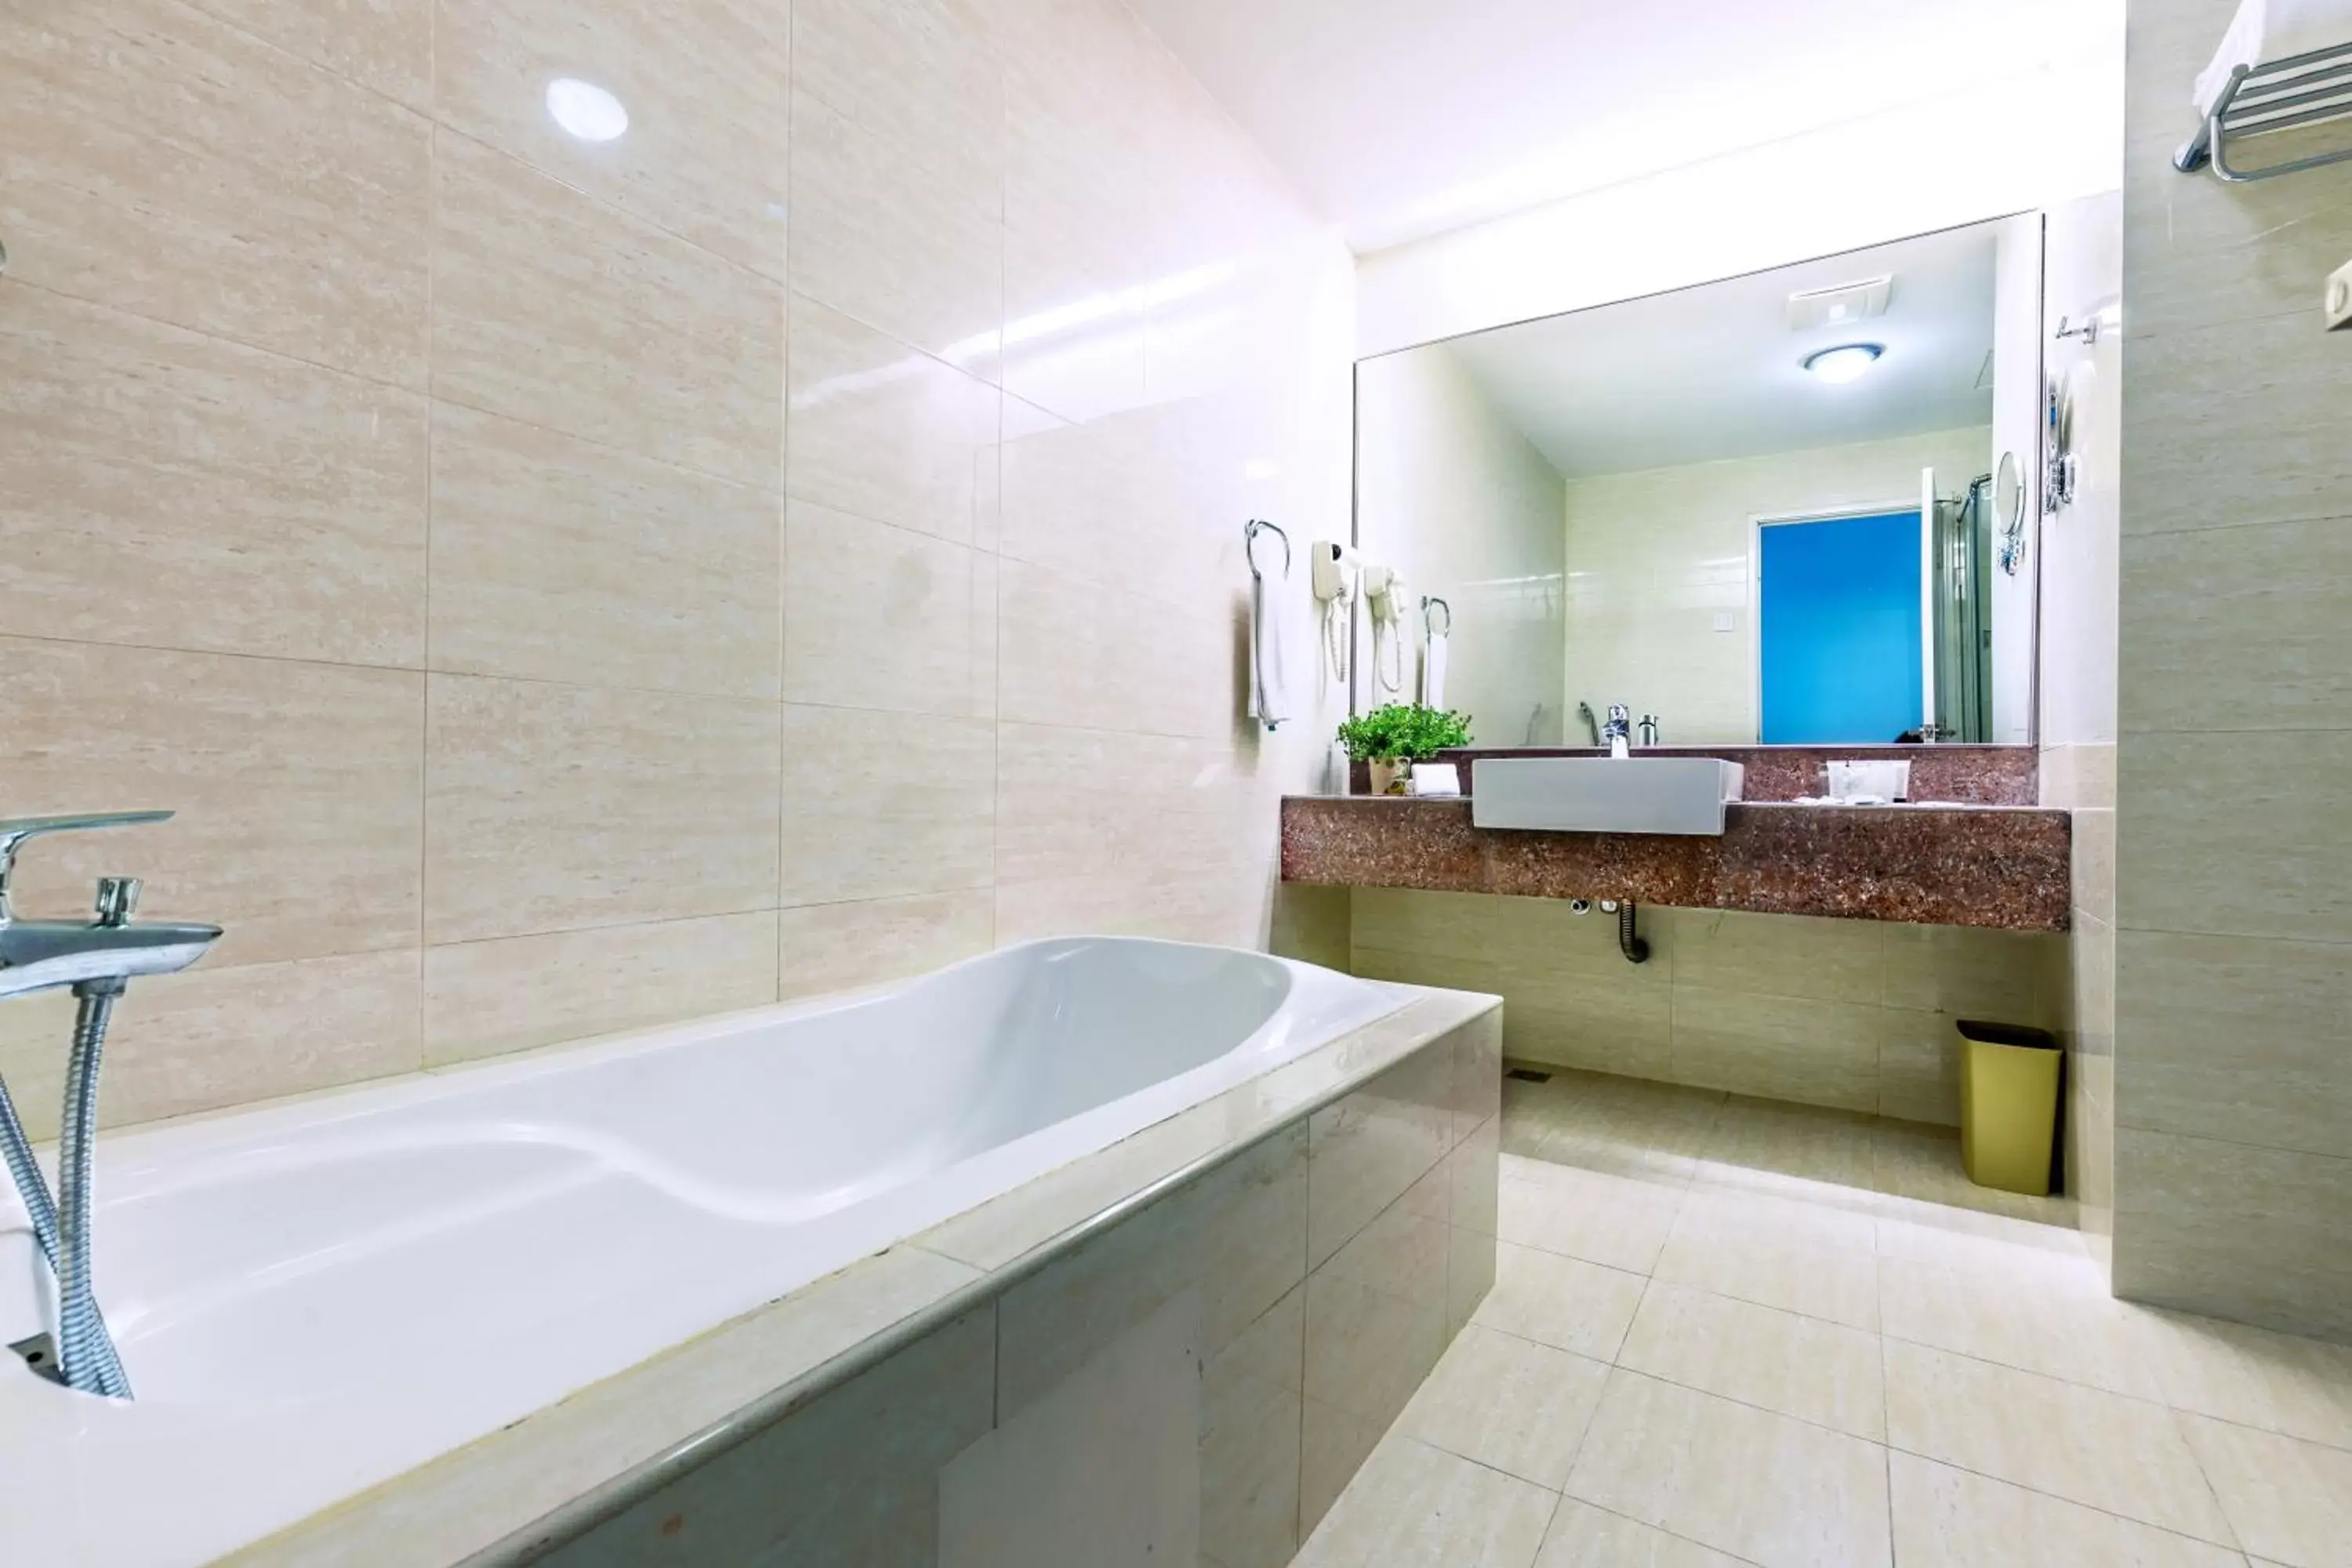 Bathroom in Ixora Hotel Penang